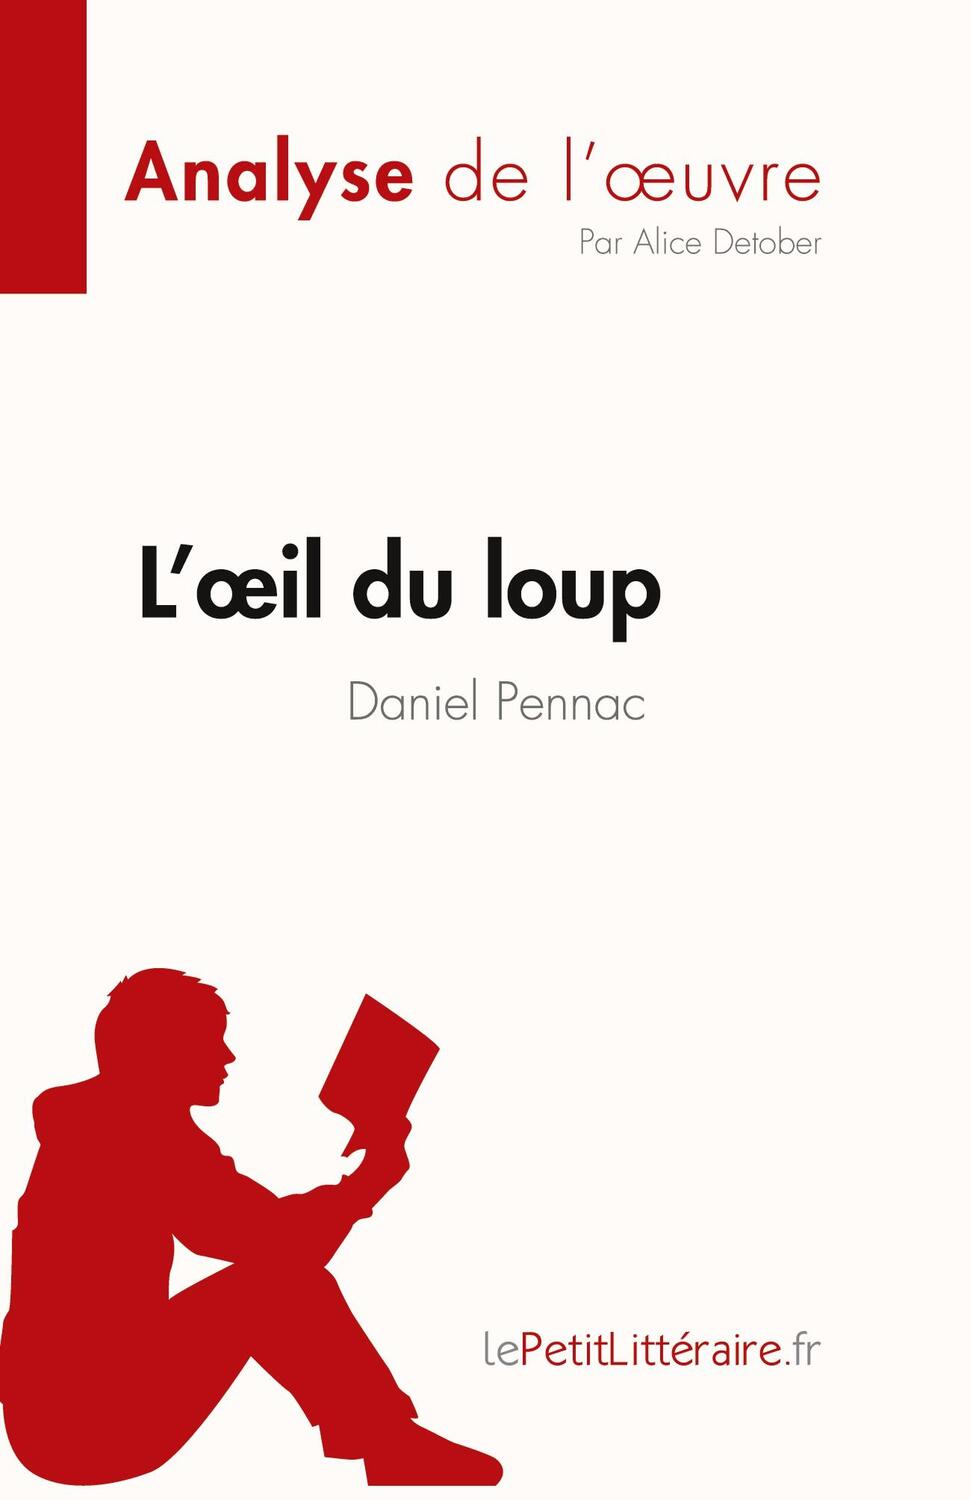 Cover: 9782808024600 | L'oeil du loup de Daniel Pennac (Analyse de l'oeuvre) | Alice Detober